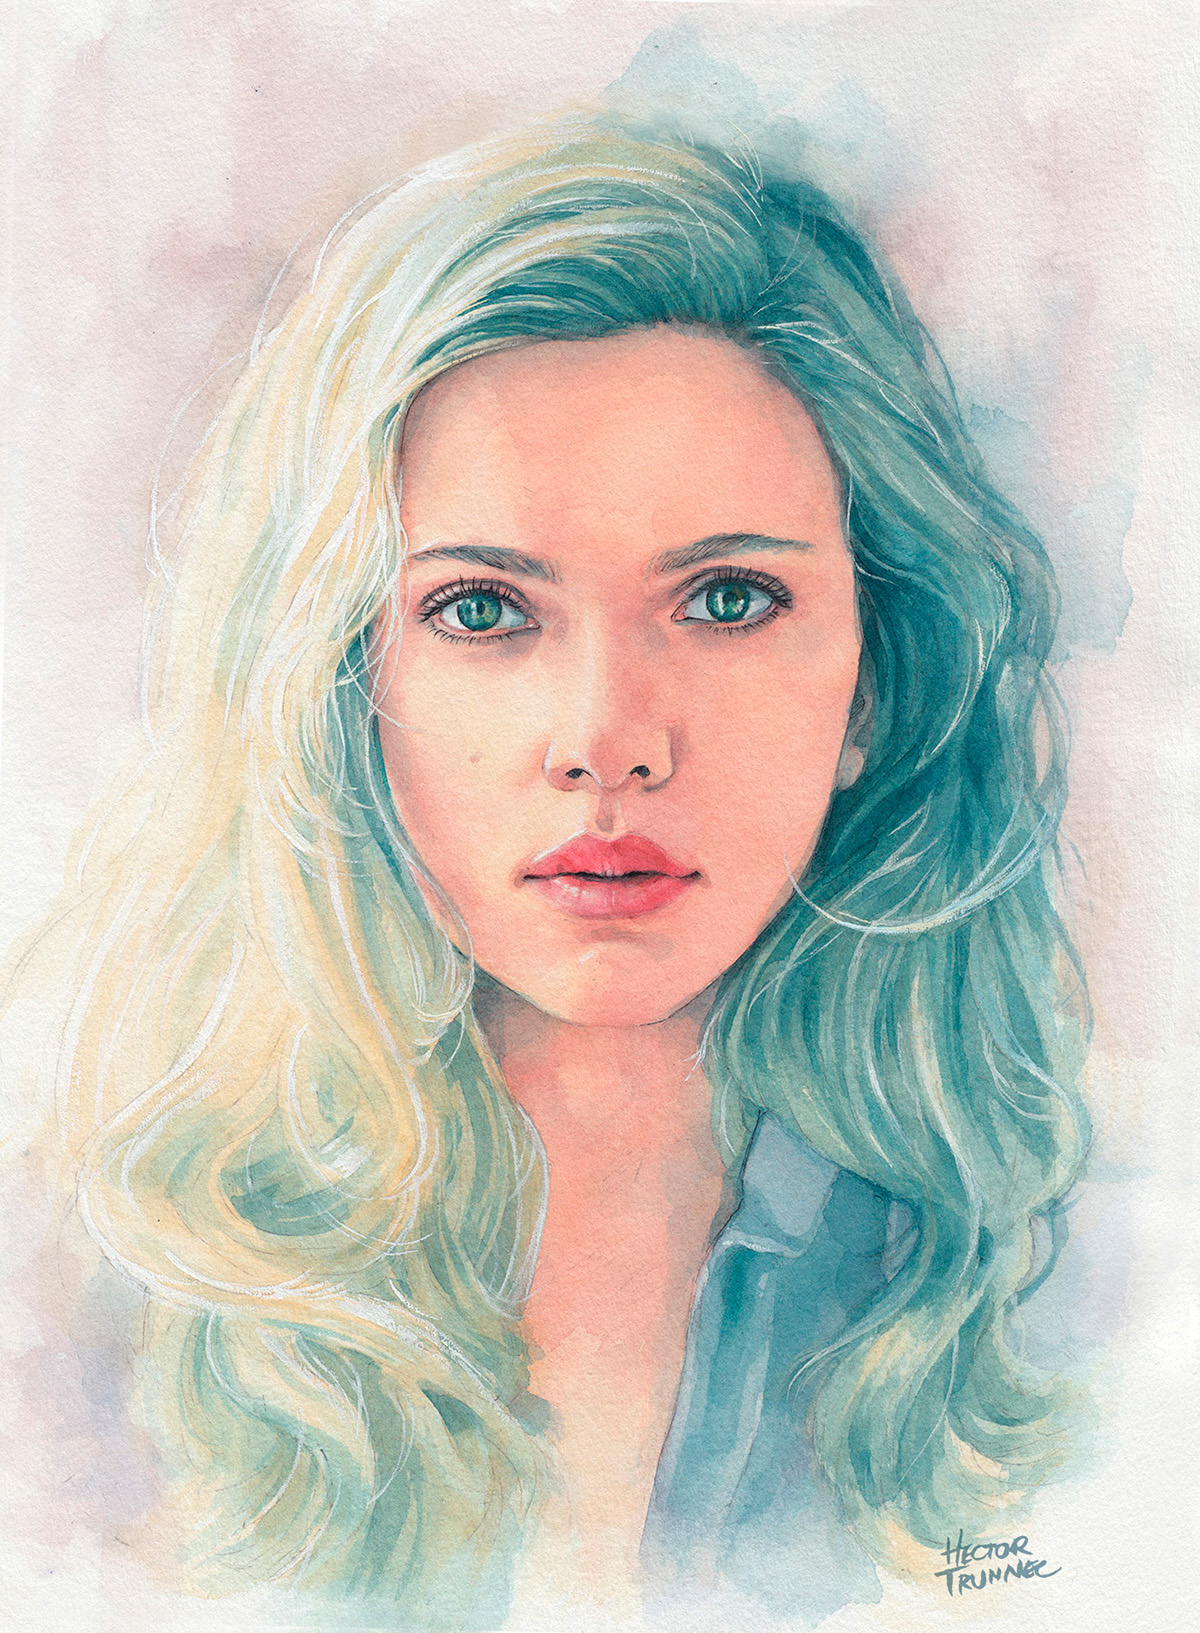 ScarlettJohansson watercolor portrait paint water color woman actress fanart movie blackwidow Beautiful